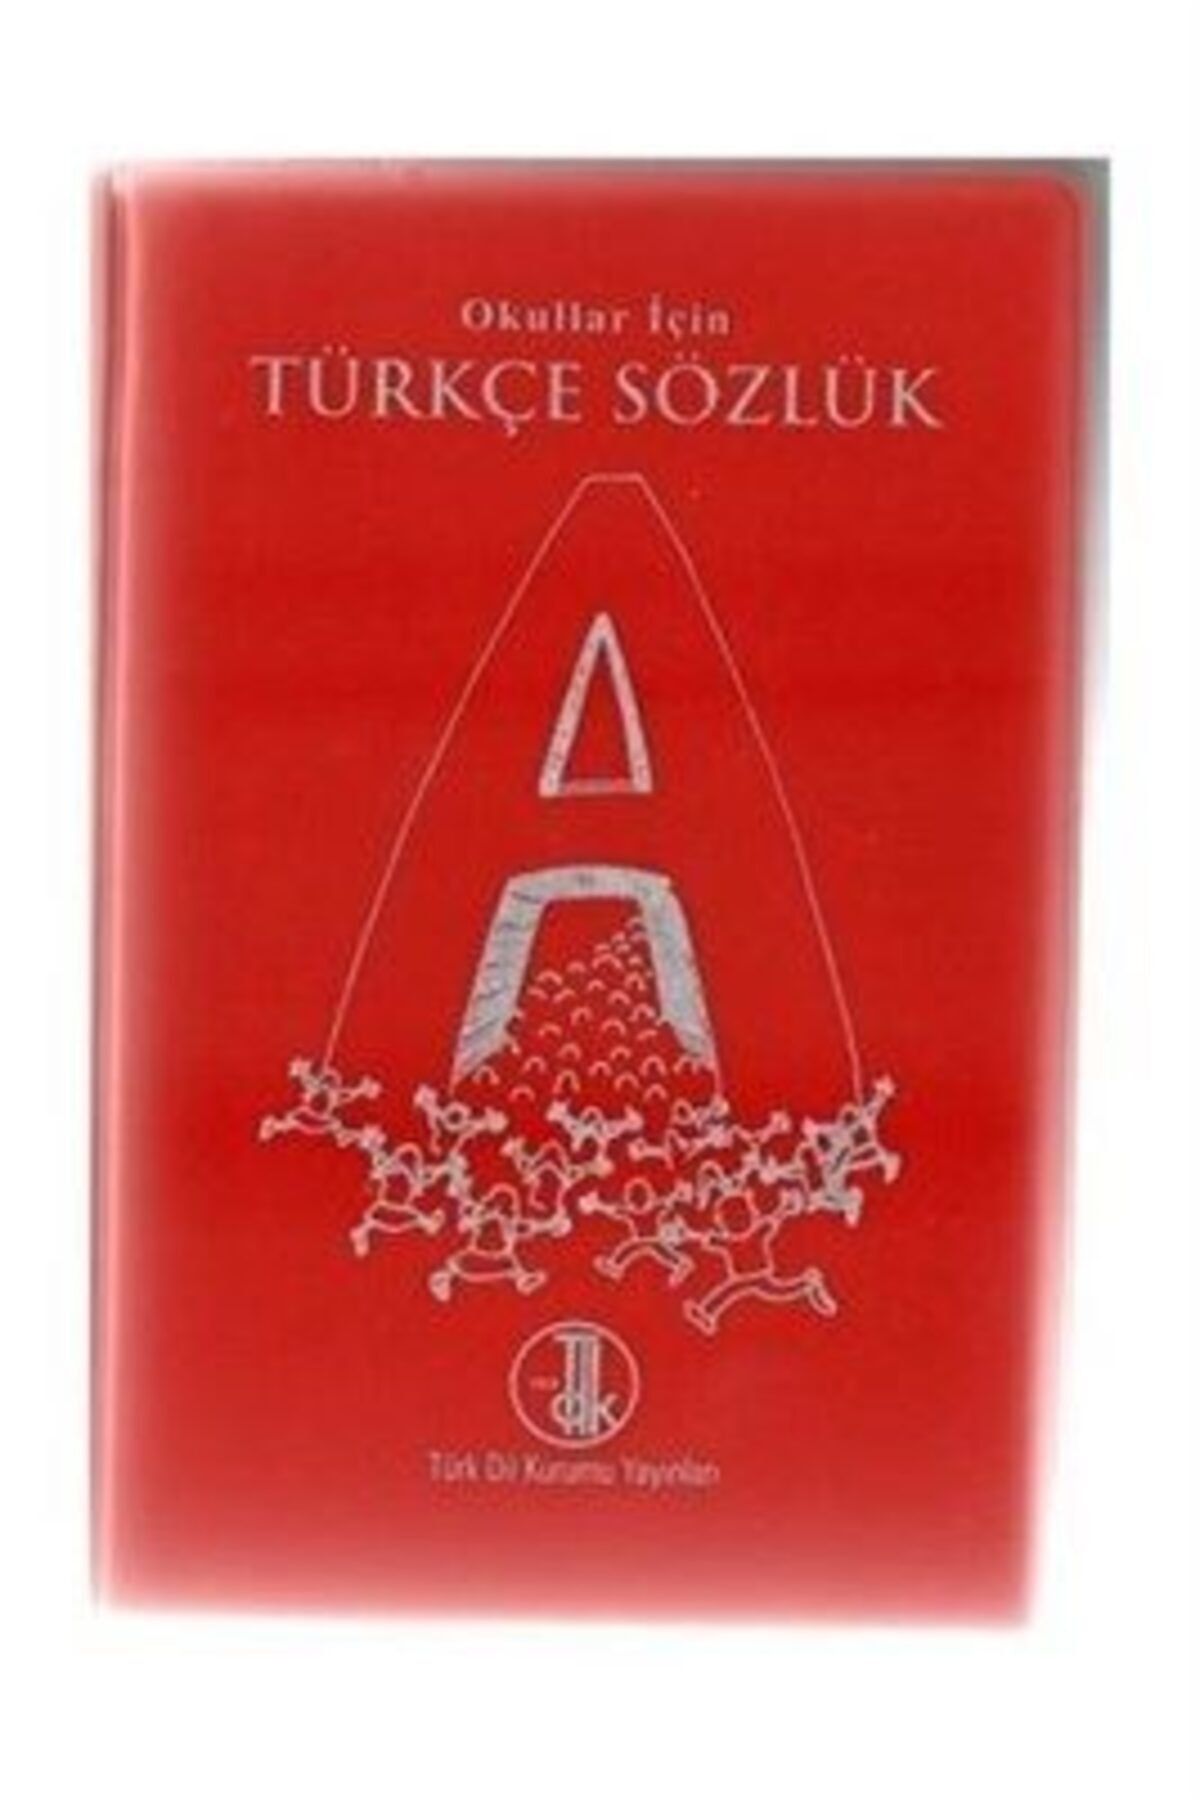 Tdk Yayınları Türkçe Sözlük Okullar Için ( 705 Sayfa ) | Komisyon |